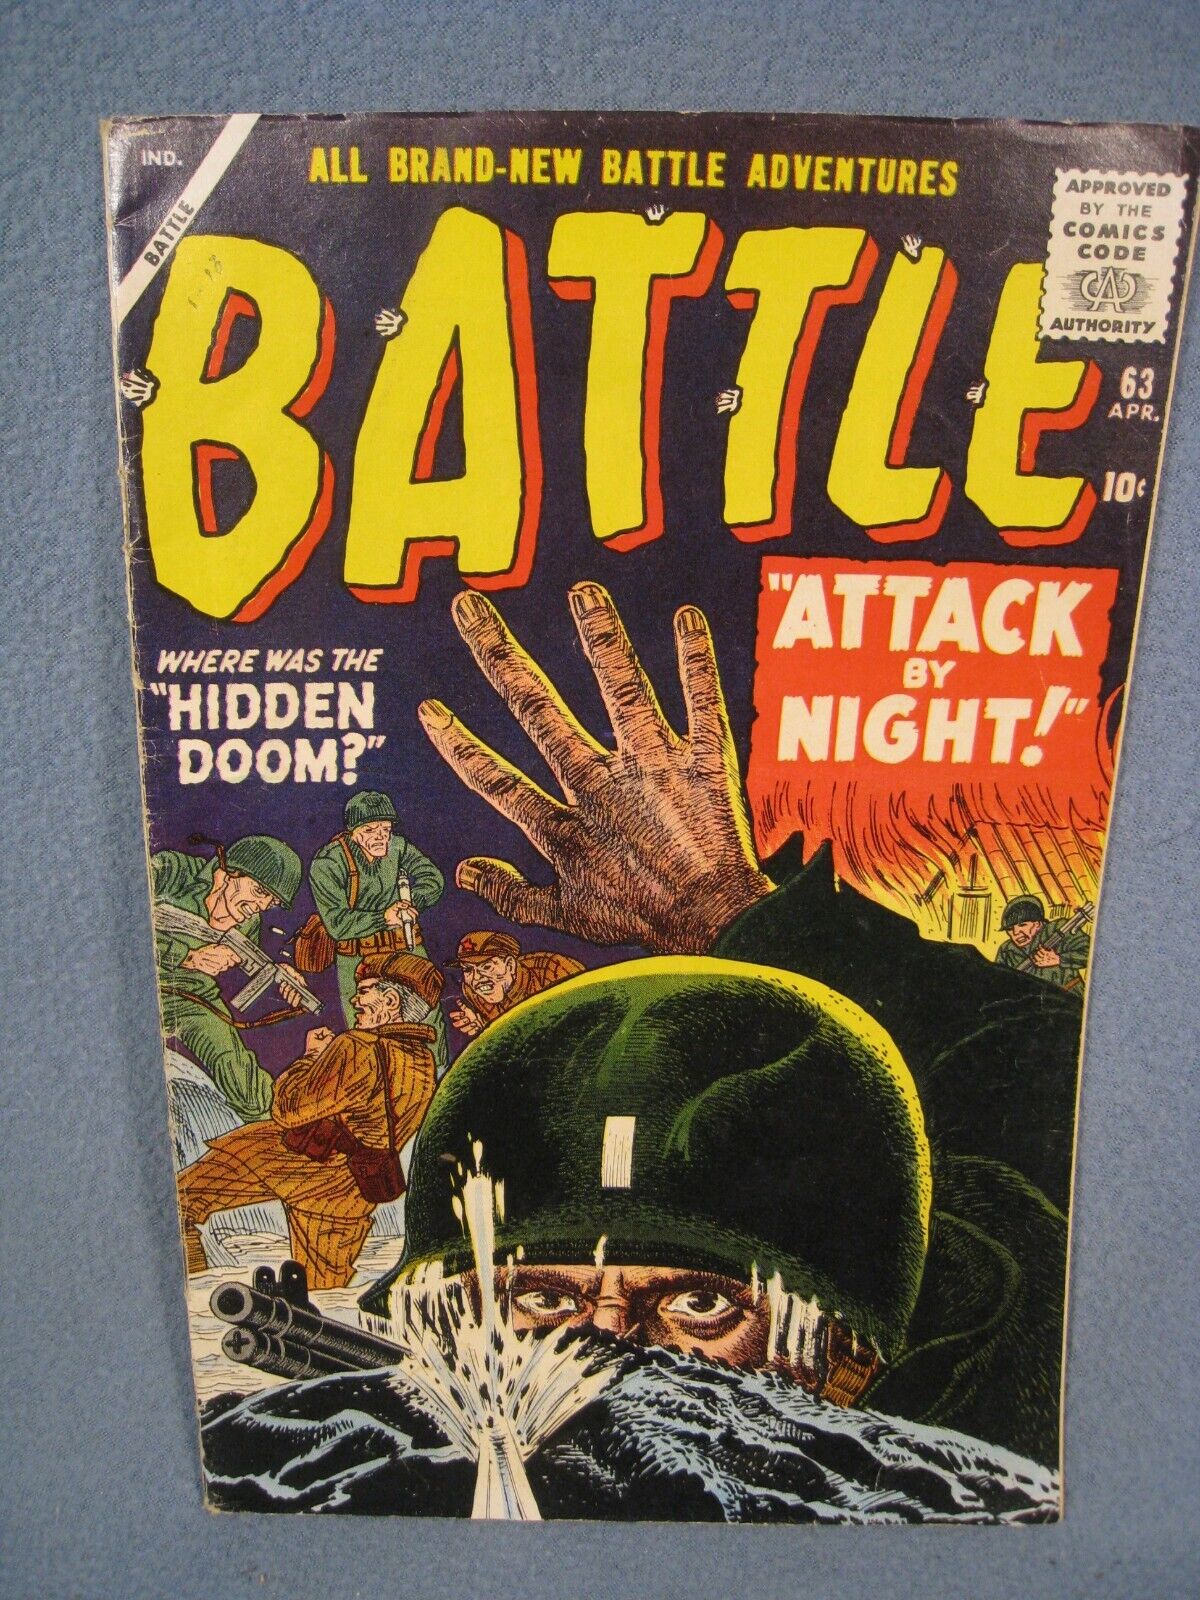 Vintage 1959 10 Cent Battle Comic book Vol 1 No. 63